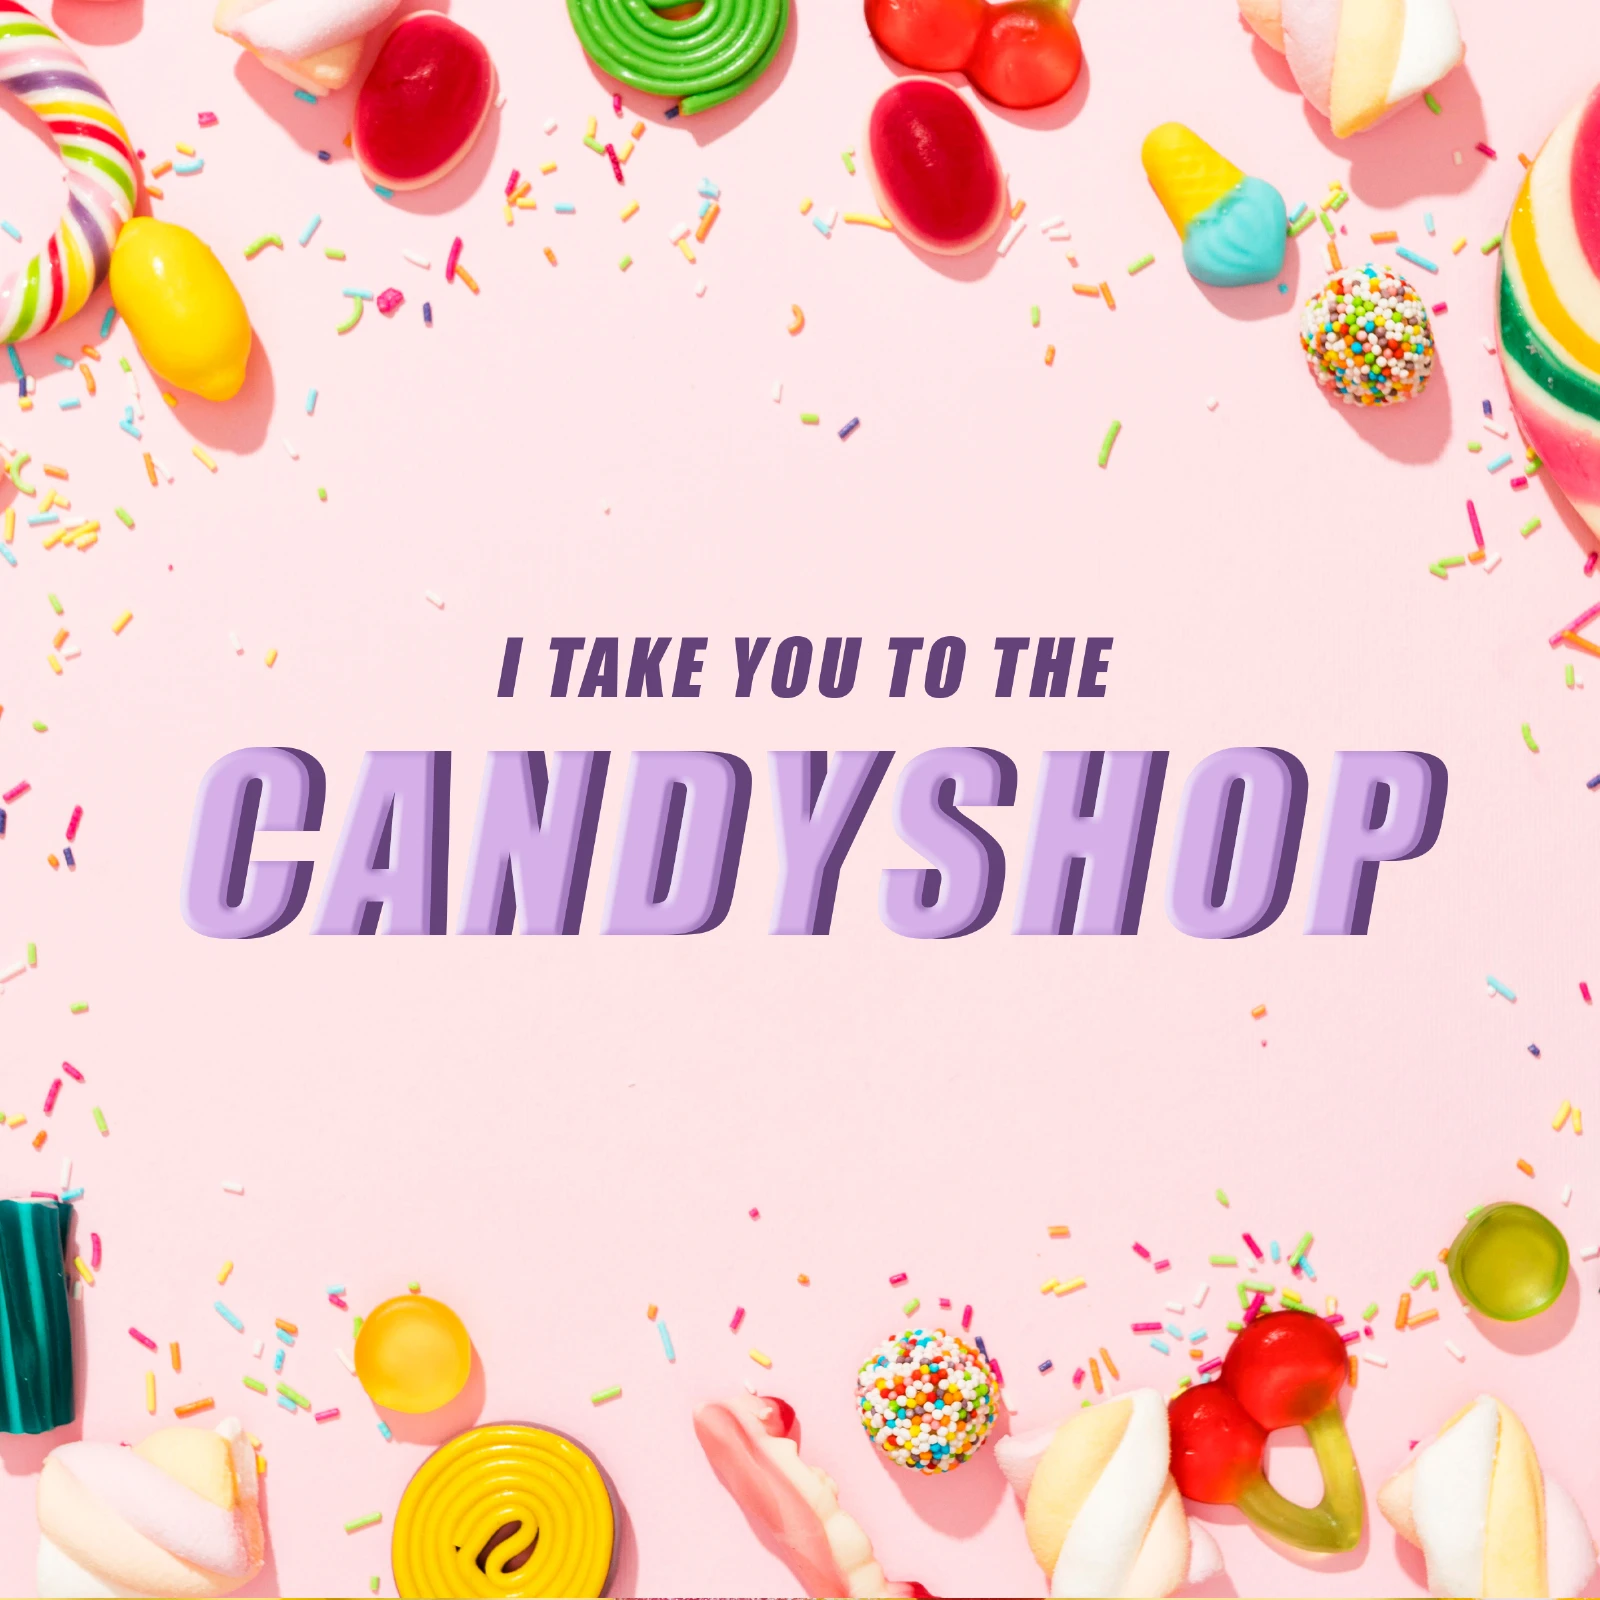 American Candyshop Süßígkeiten aus den USA und Japan und dem Ausland günstig kaufen